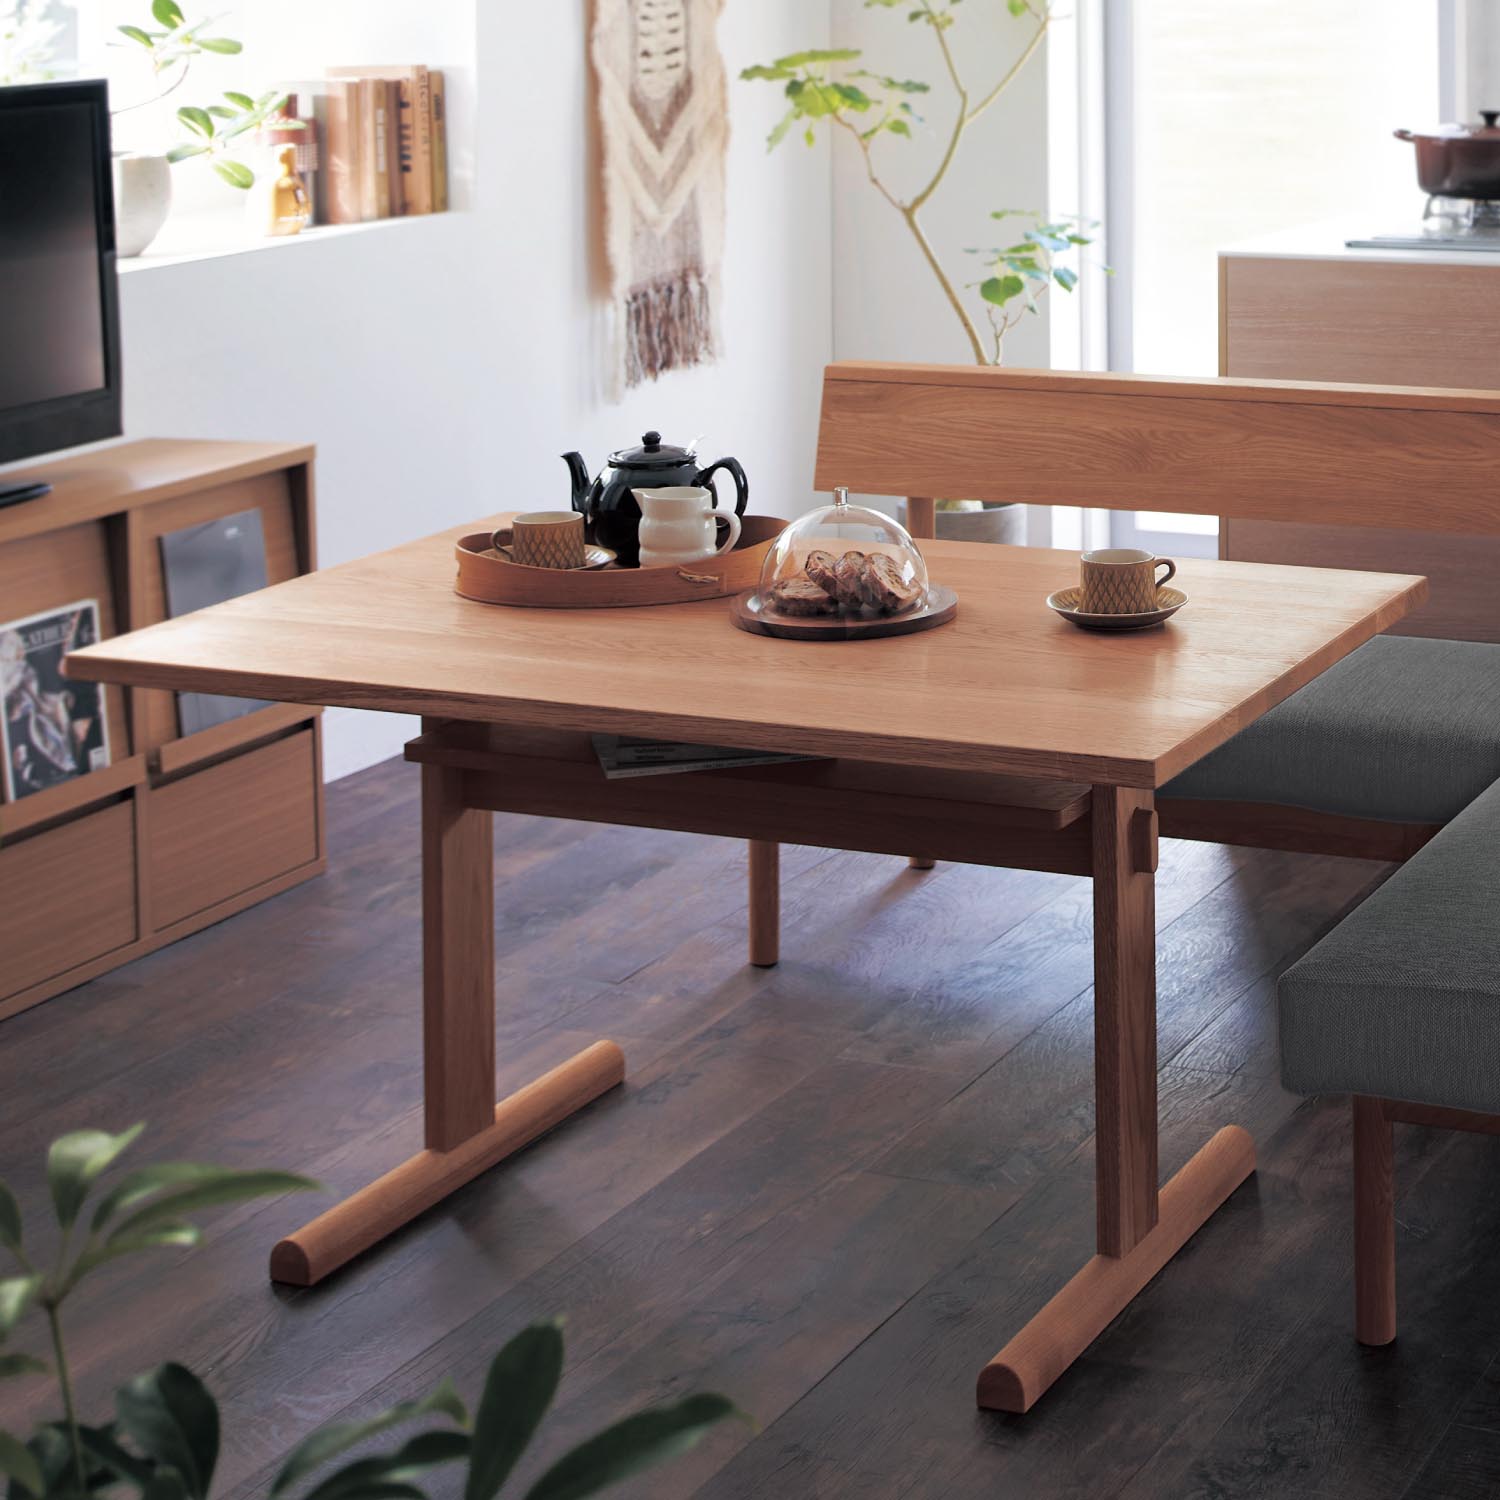 【エヌディースタイル/NDstyle.】オーク無垢材を贅沢に使用した北欧モダンなダイニングテーブル